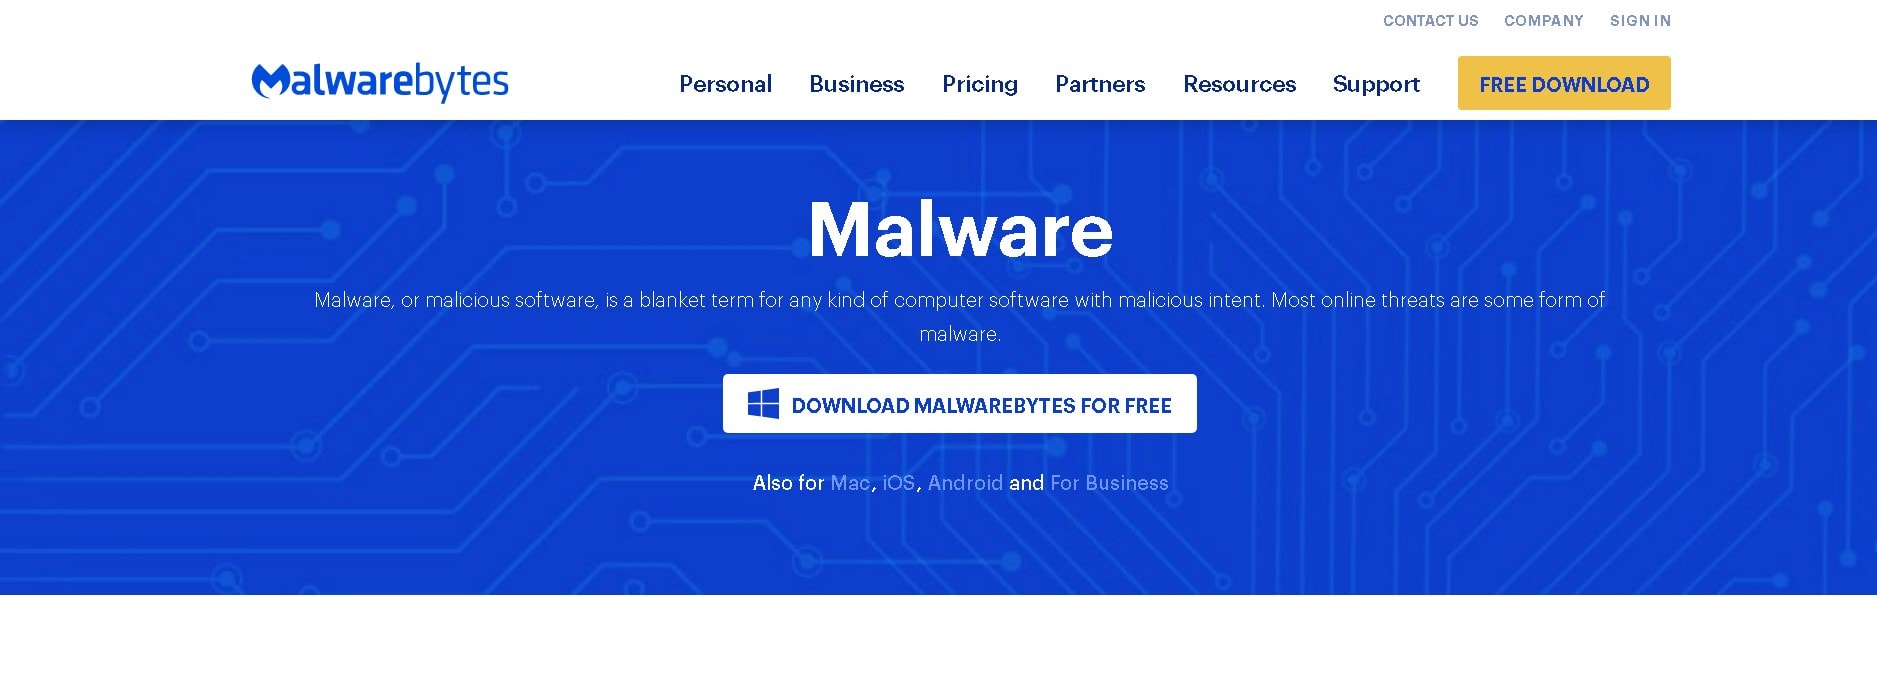 Malwarebytes Malware